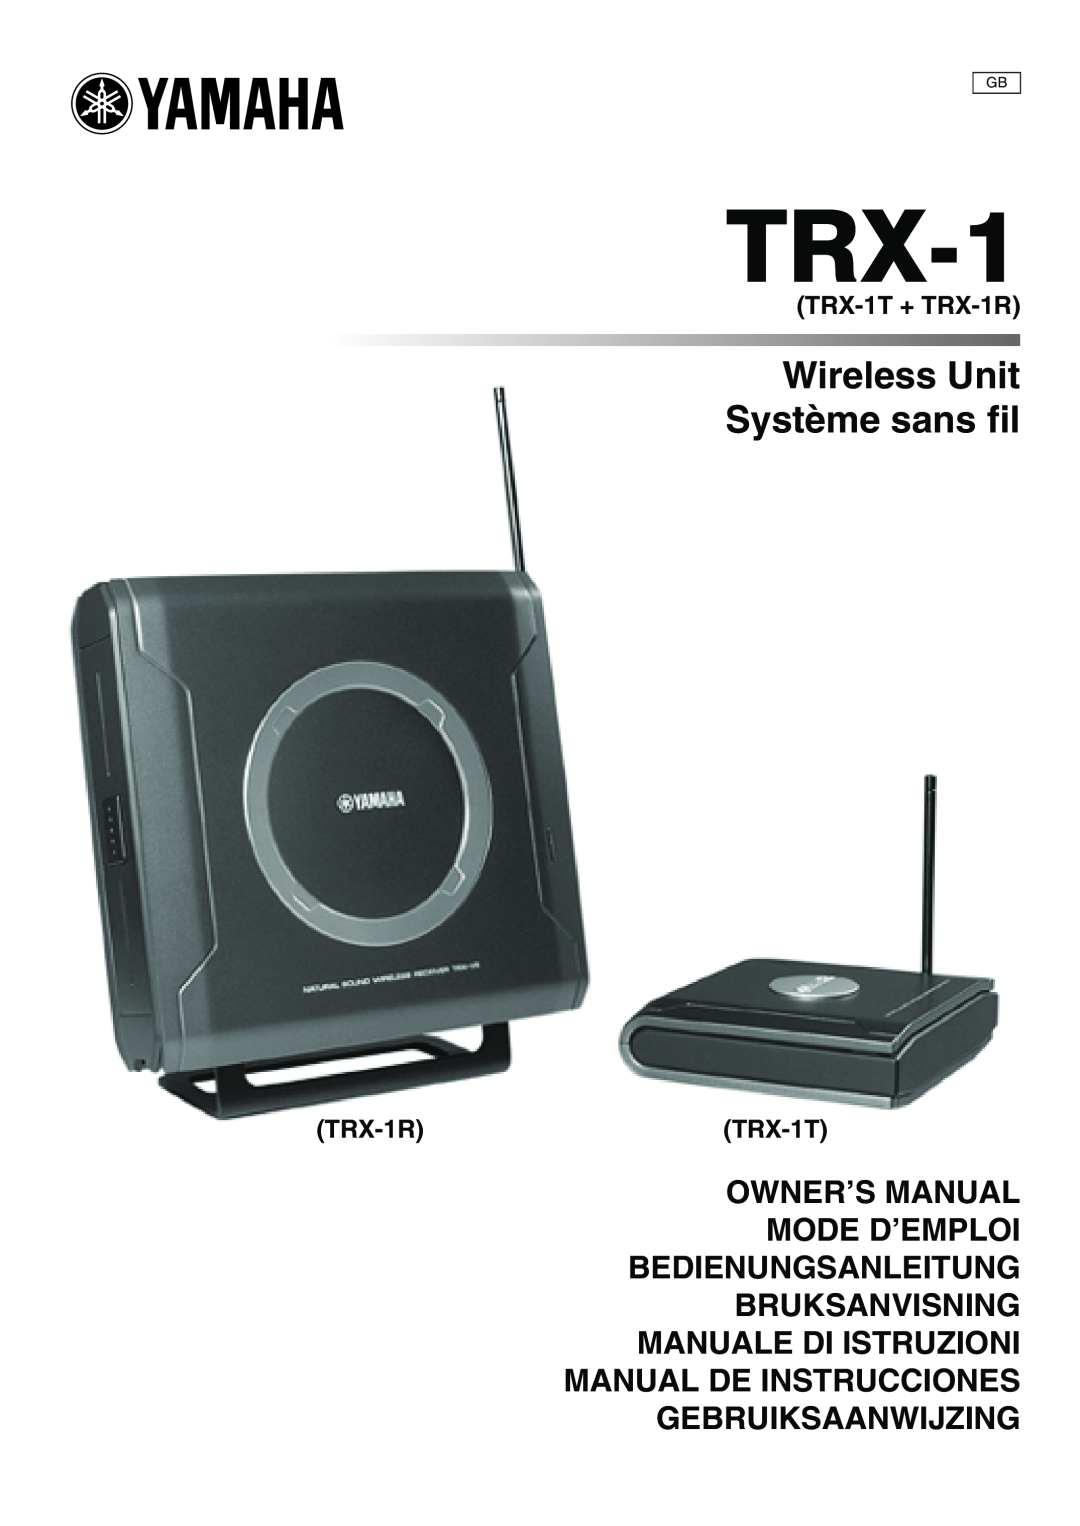 Yamaha owner manual TRX-1T+ TRX-1R, TRX-1RTRX-1T, Wireless Unit Système sans fil, Bruksanvisning Manuale Di Istruzioni 